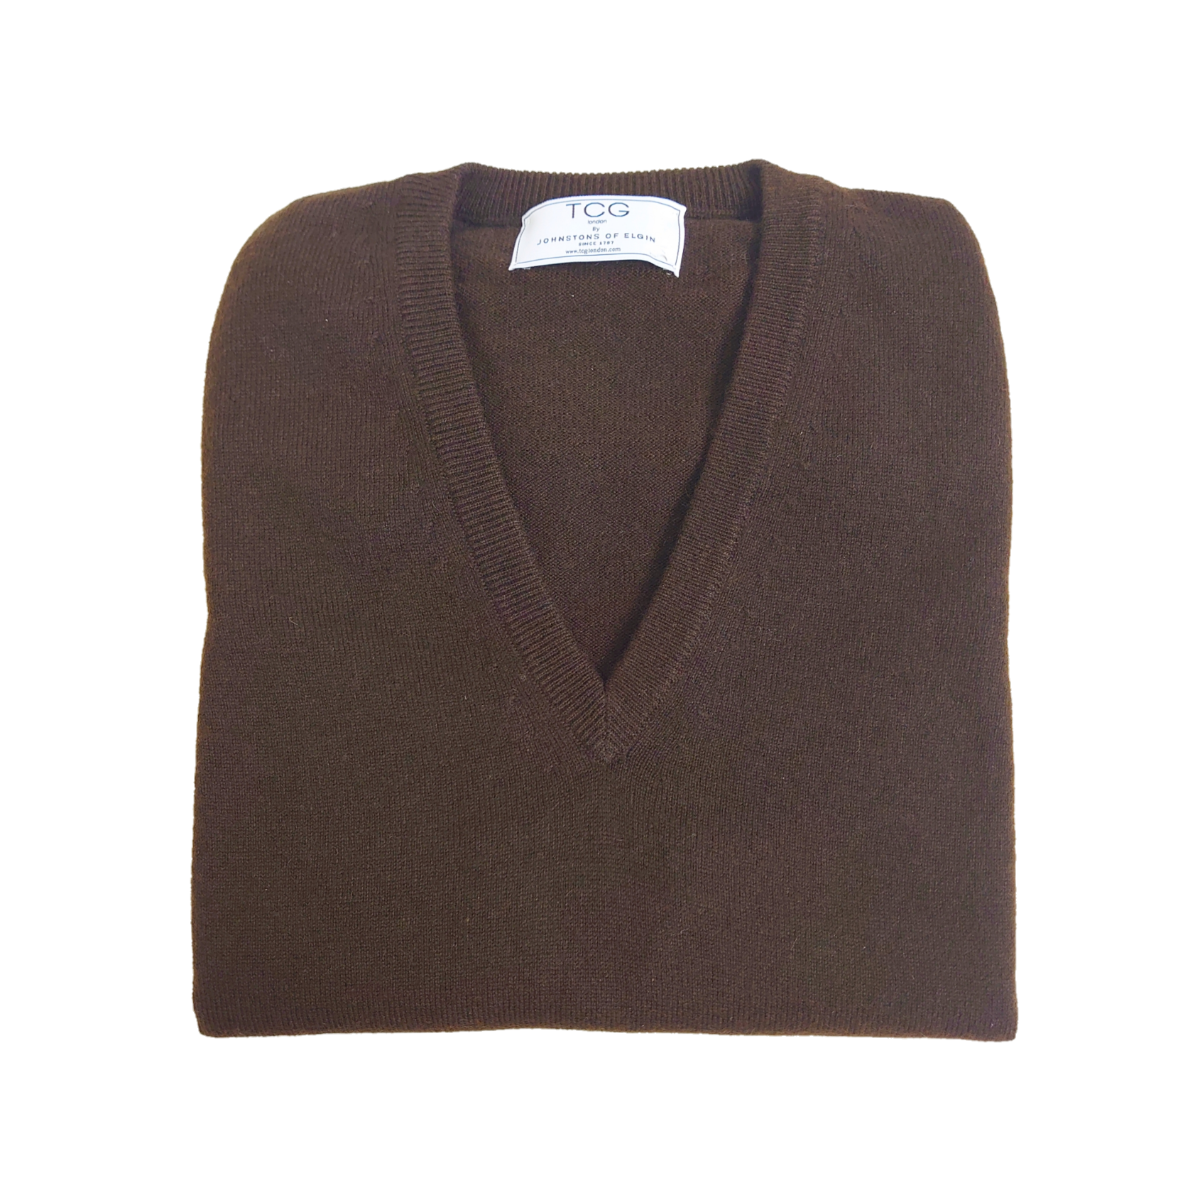 Men's Classic 100% Pure Cashmere Slipover - Dark Brown - S